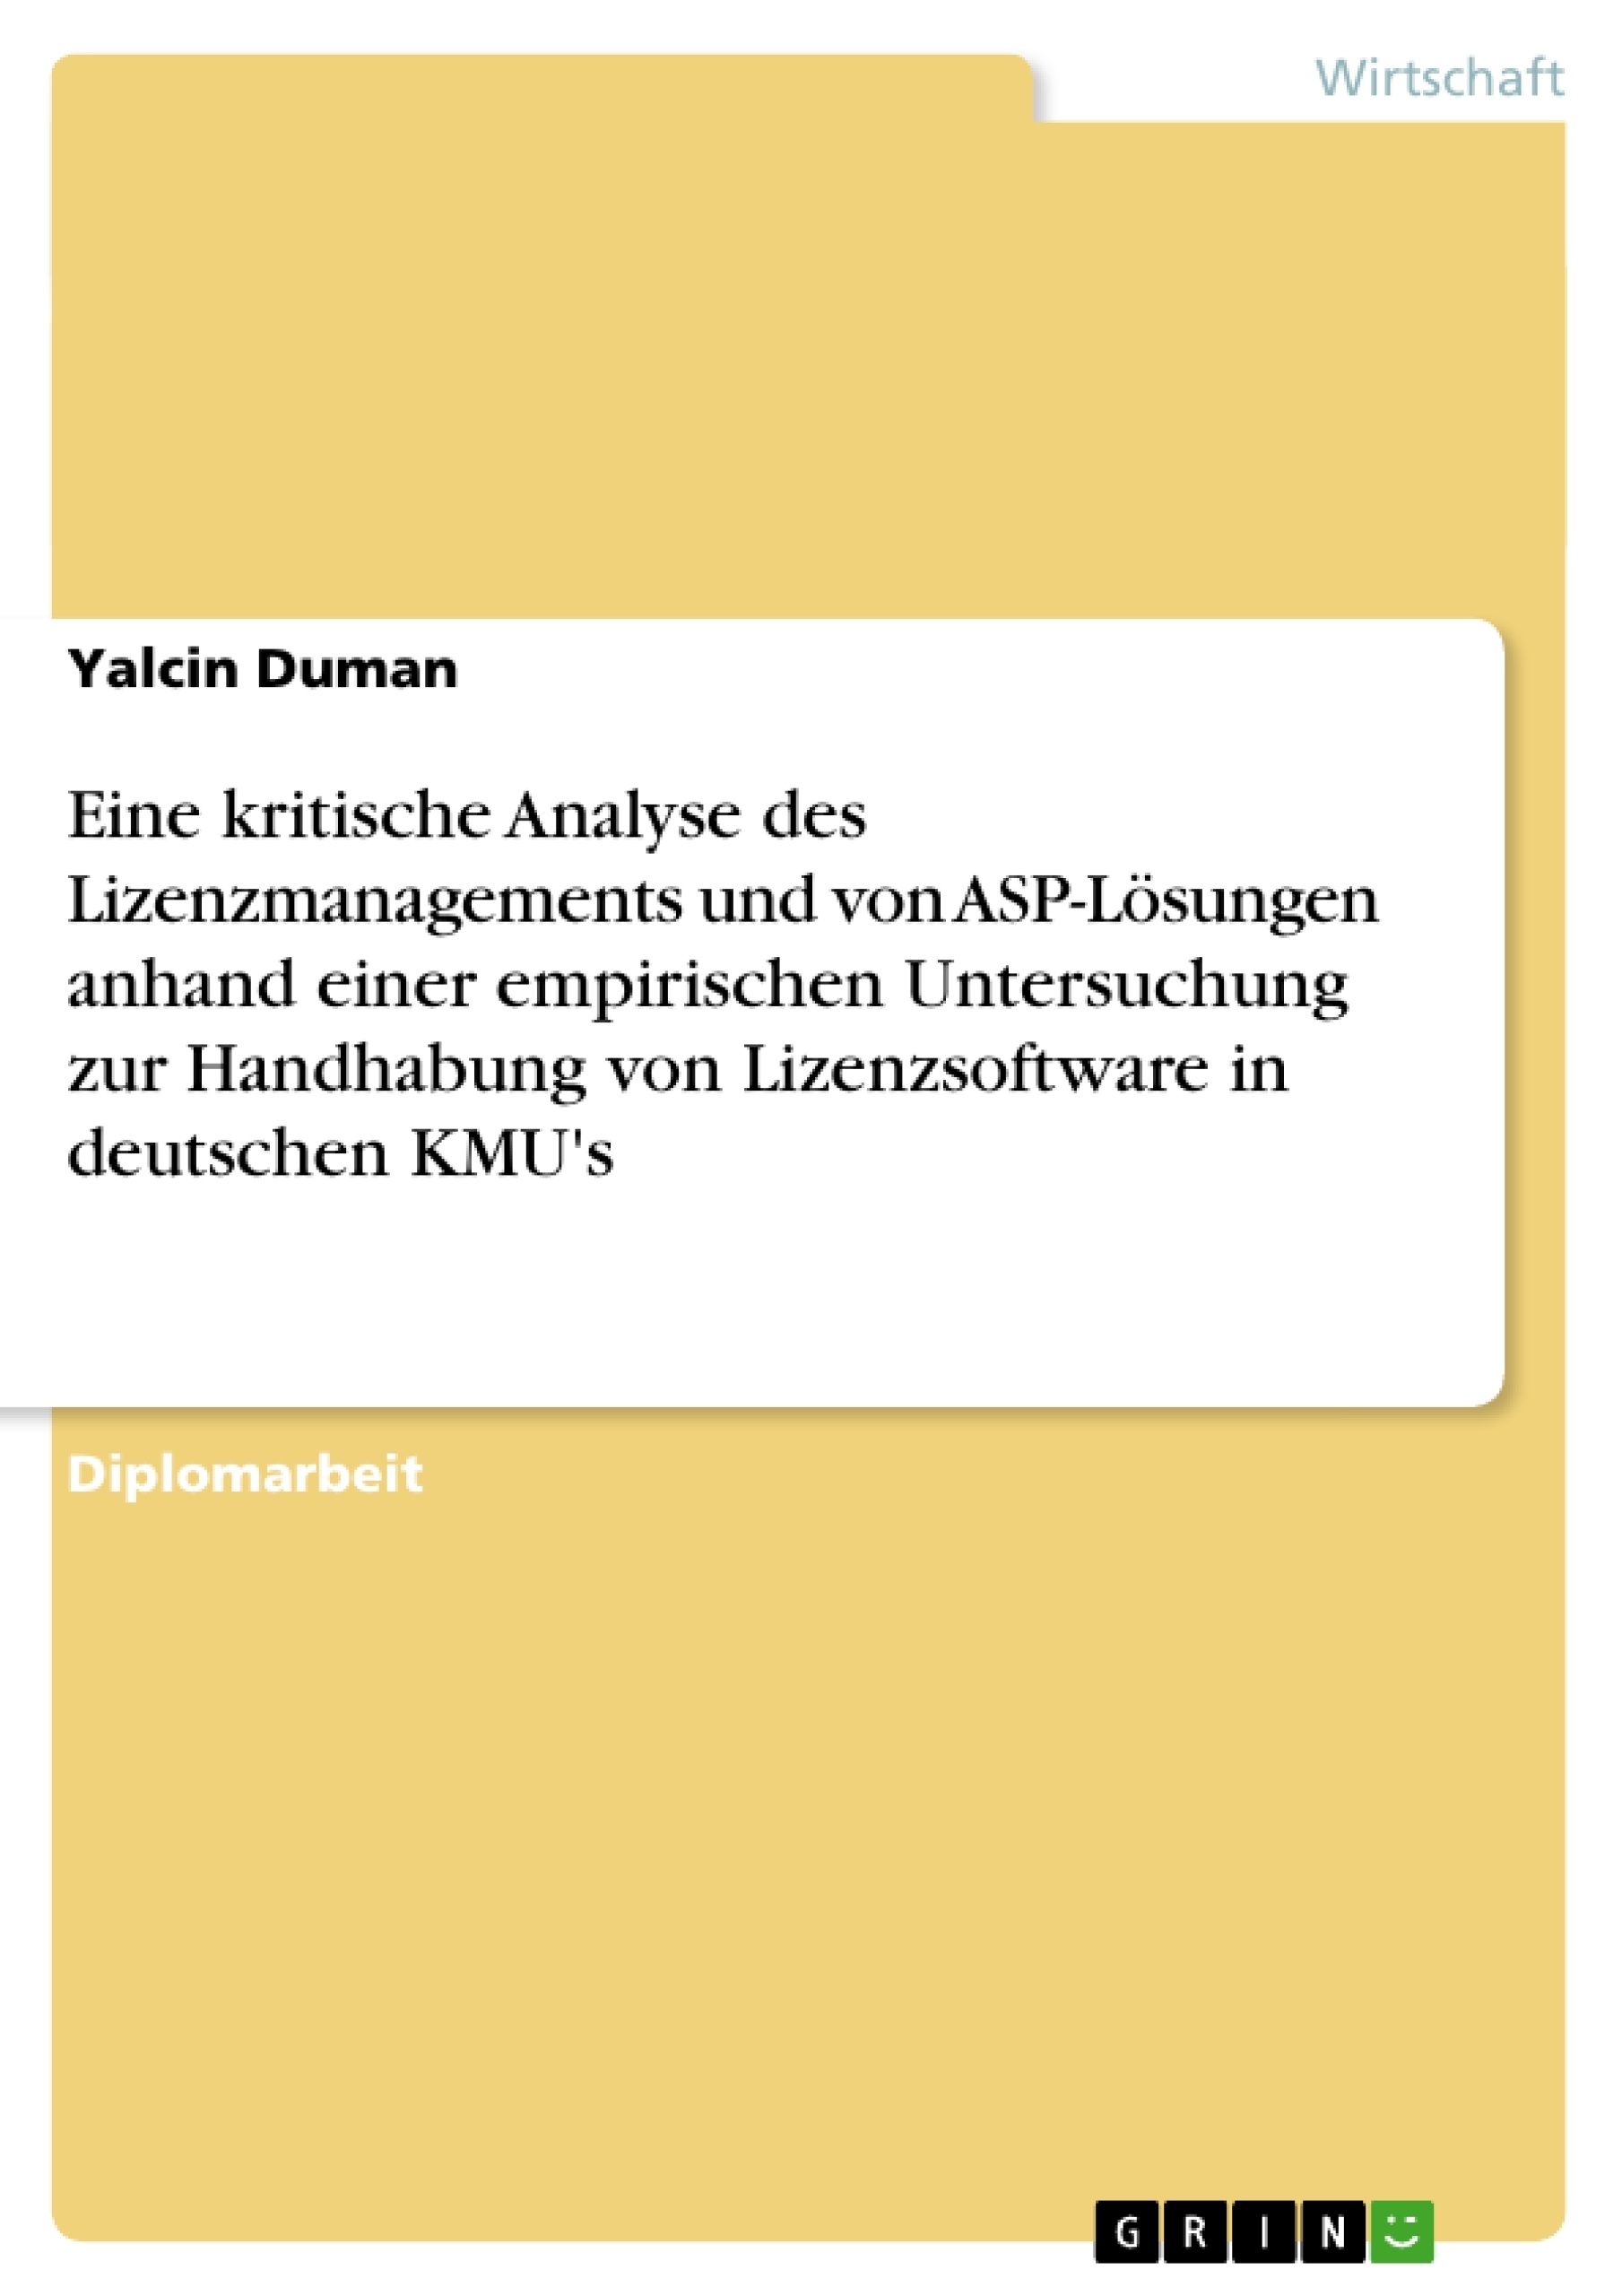 Título: Eine kritische Analyse des Lizenzmanagements und von ASP-Lösungen anhand einer empirischen Untersuchung zur Handhabung von Lizenzsoftware in deutschen KMU's